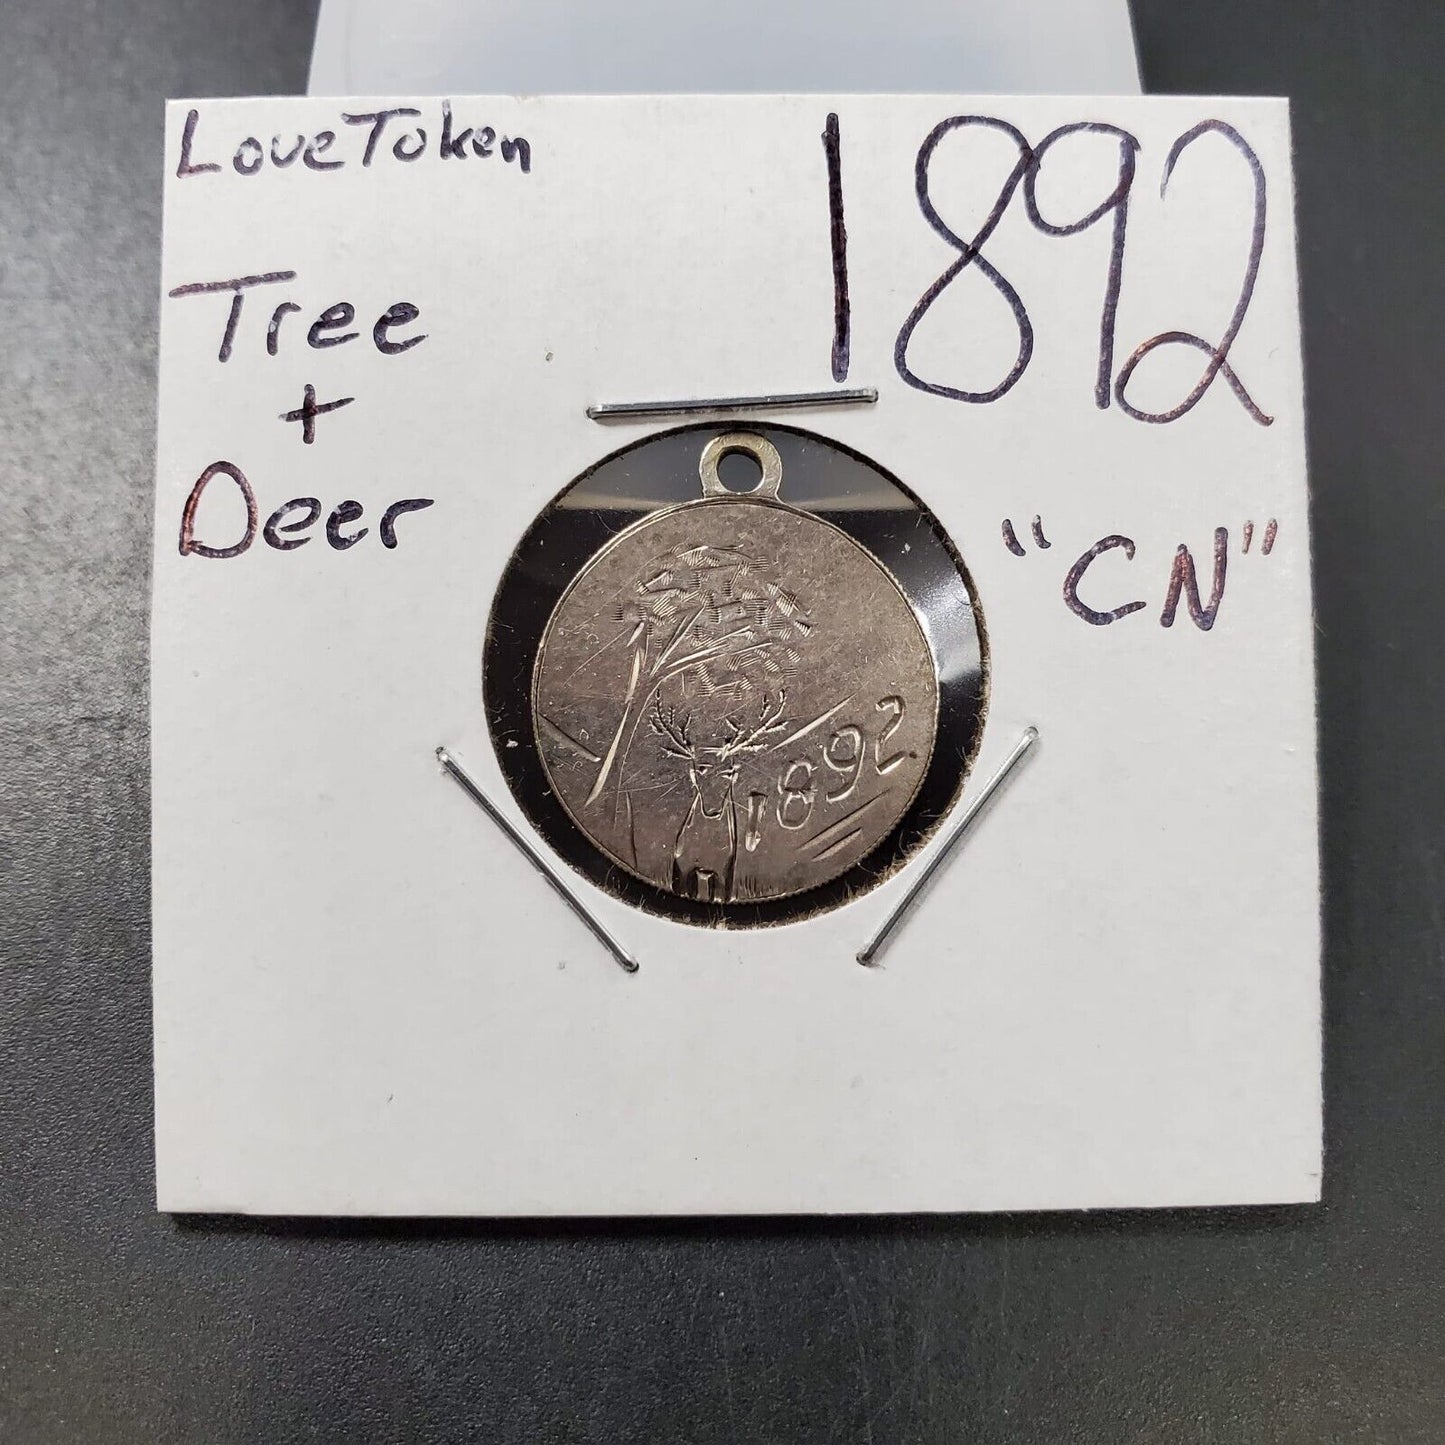 1892 Copper Nickel Custom Engraved Love Token Tree & Deer